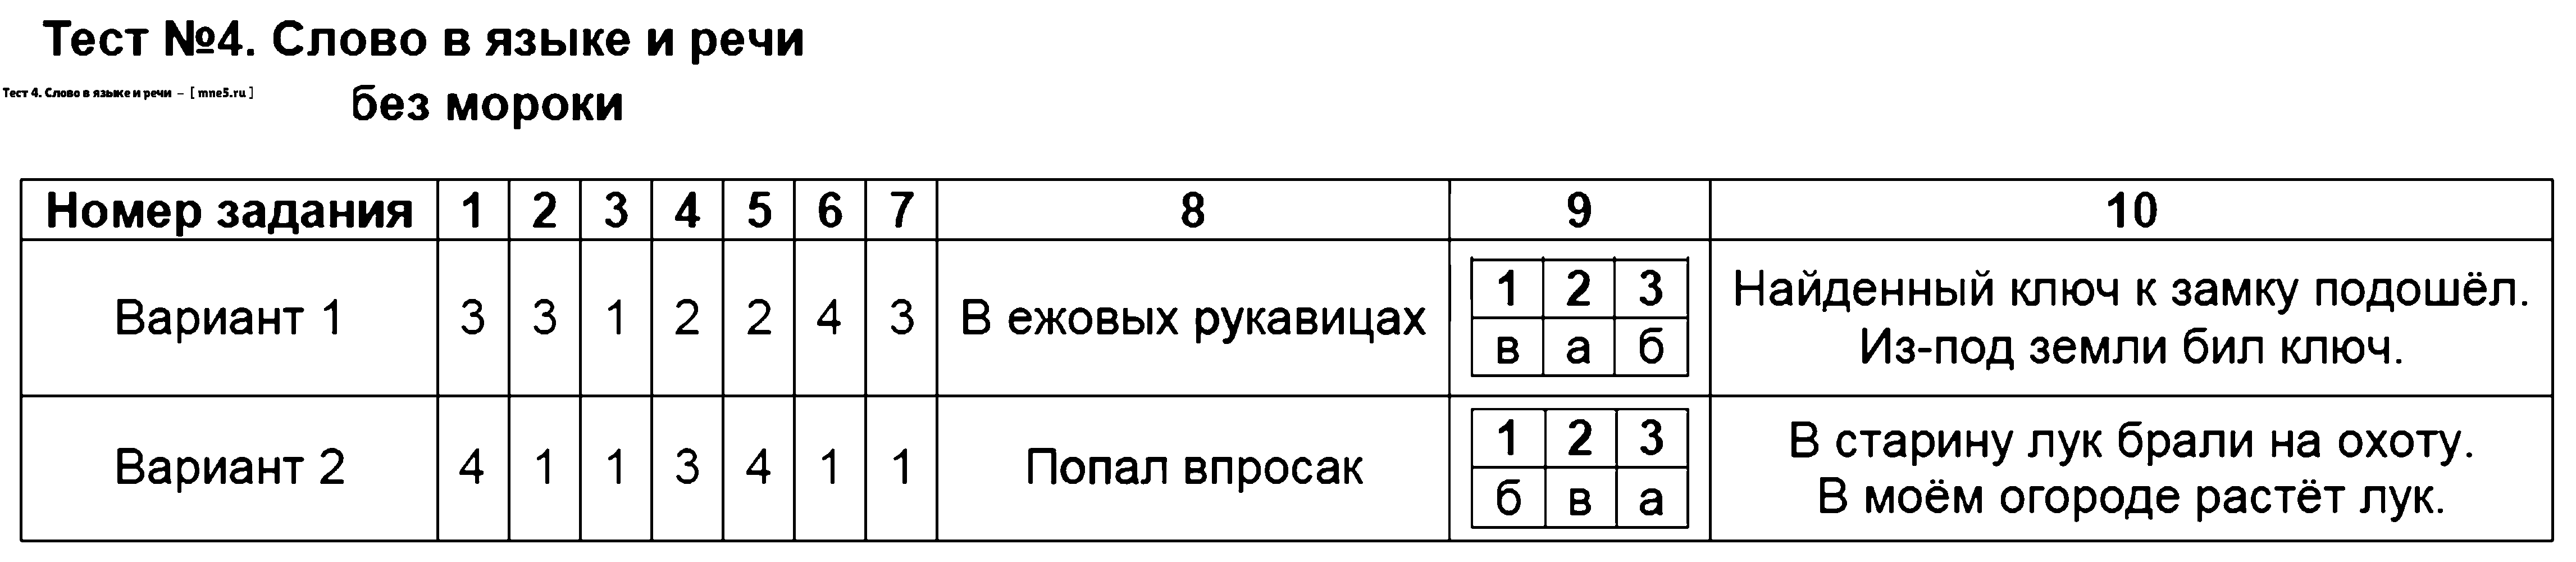 ГДЗ Русский язык 3 класс - Тест 4. Слово в языке и речи